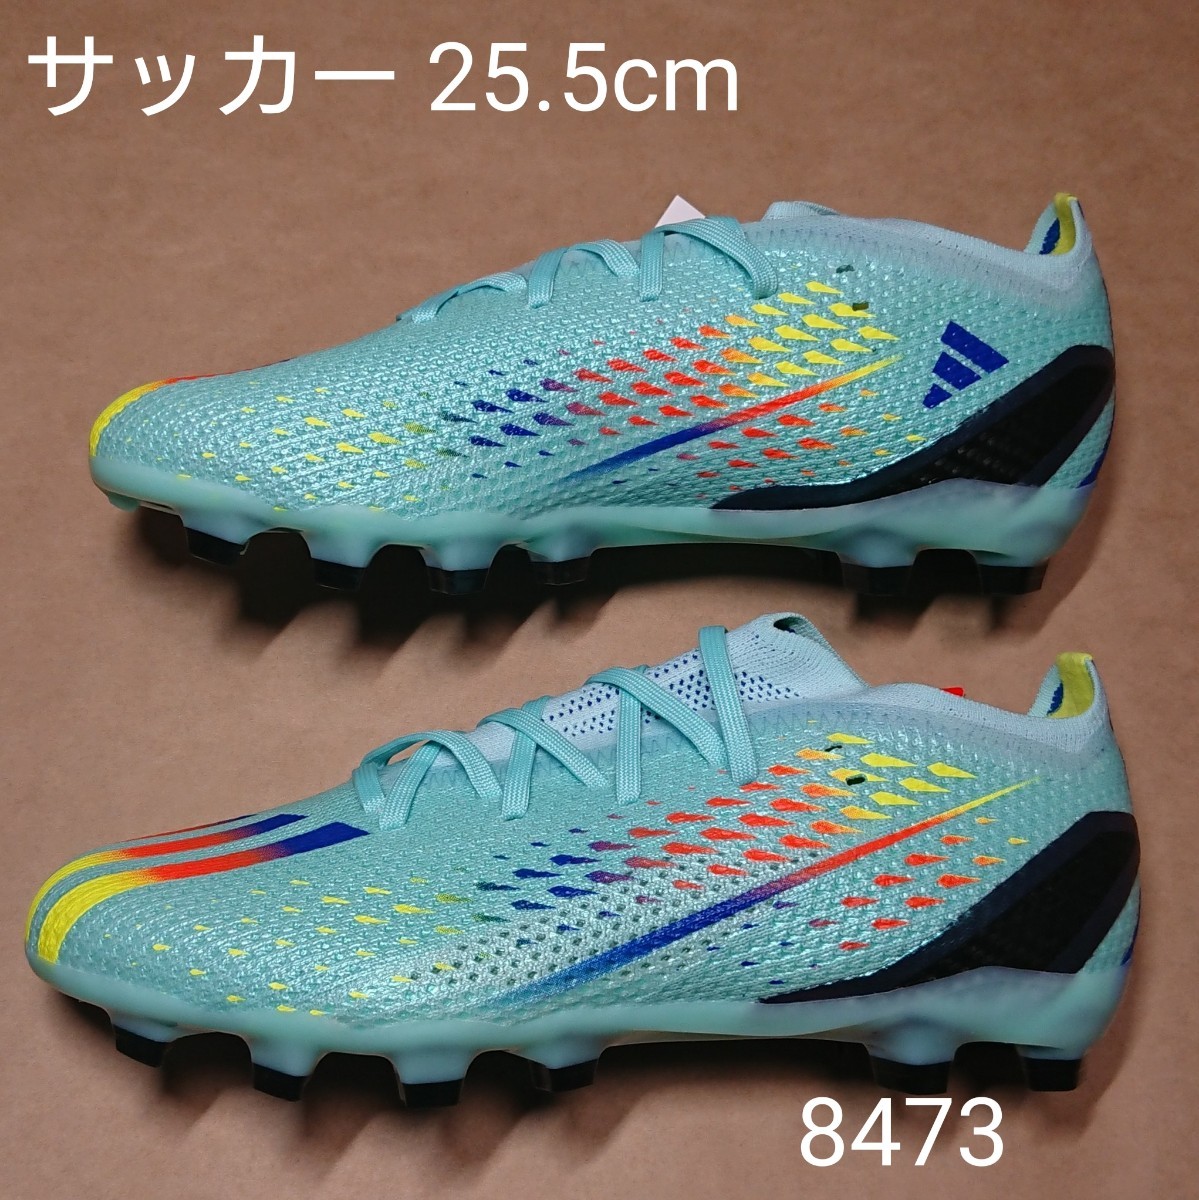 愛用 サッカースパイクシューズ 8473 HG/AG SPEEDPORTAL.2 X adidas